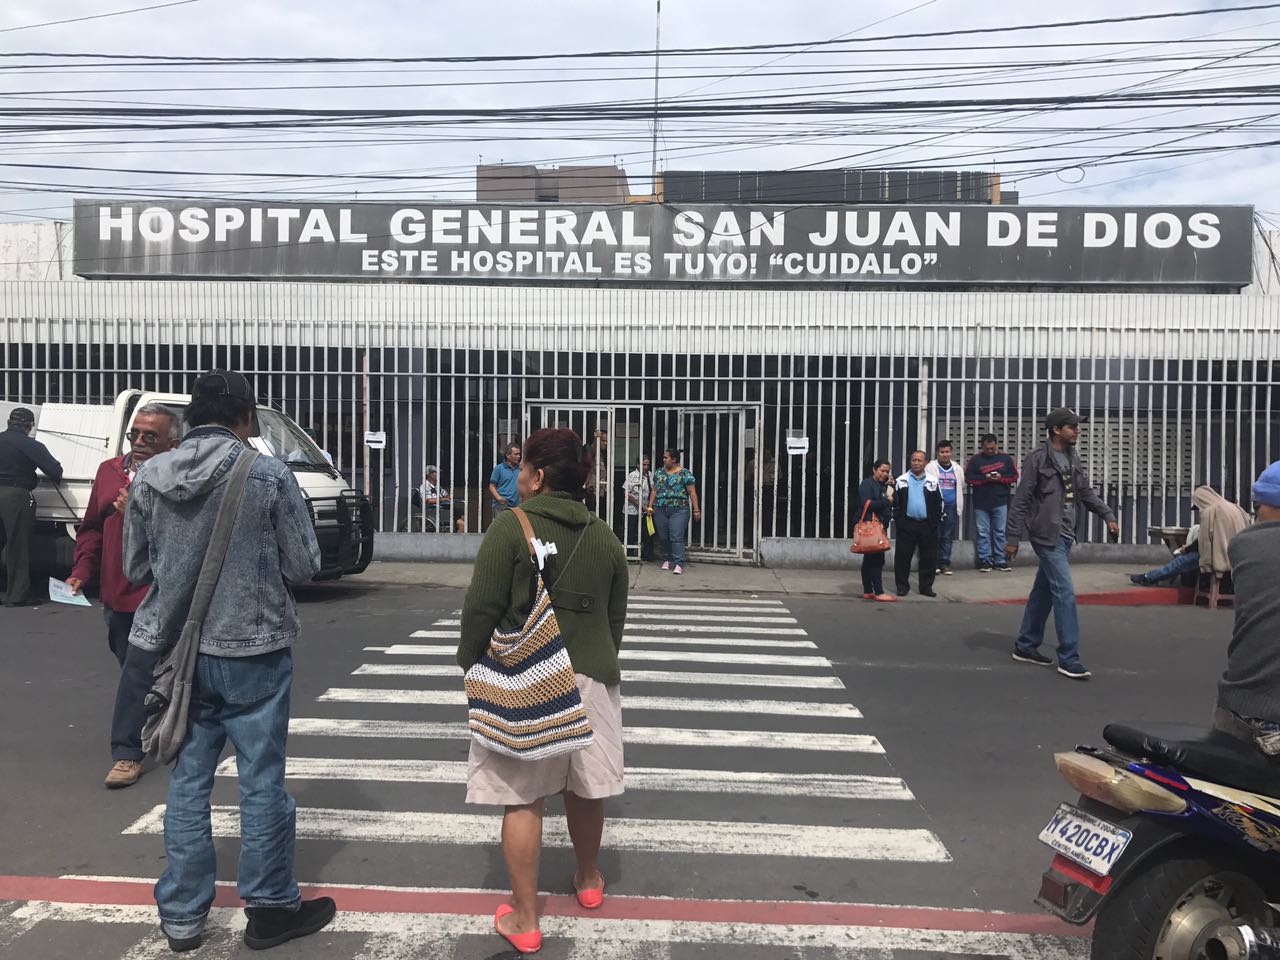 Hospital General San Juan de Dios restablece sus visitas